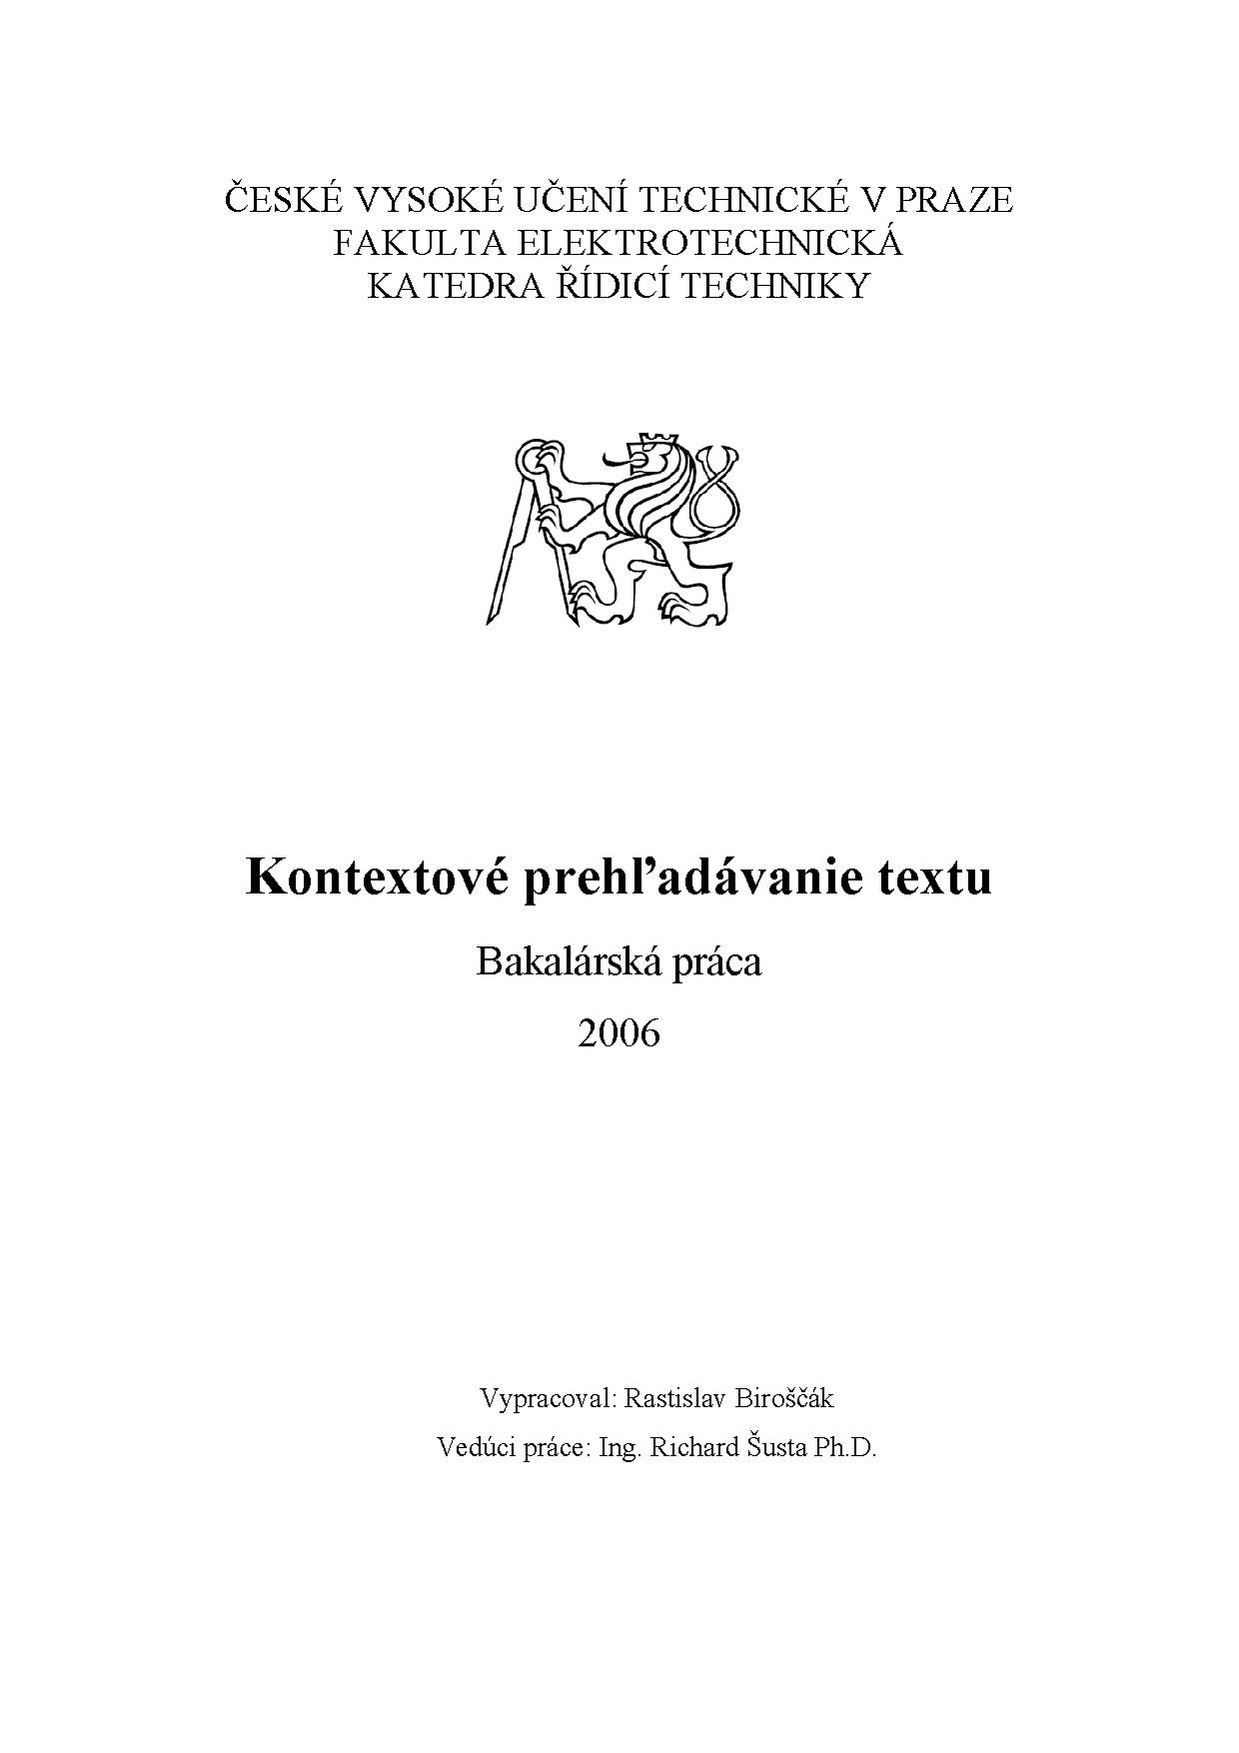 Bp 2006 biroscak rastislav.pdf